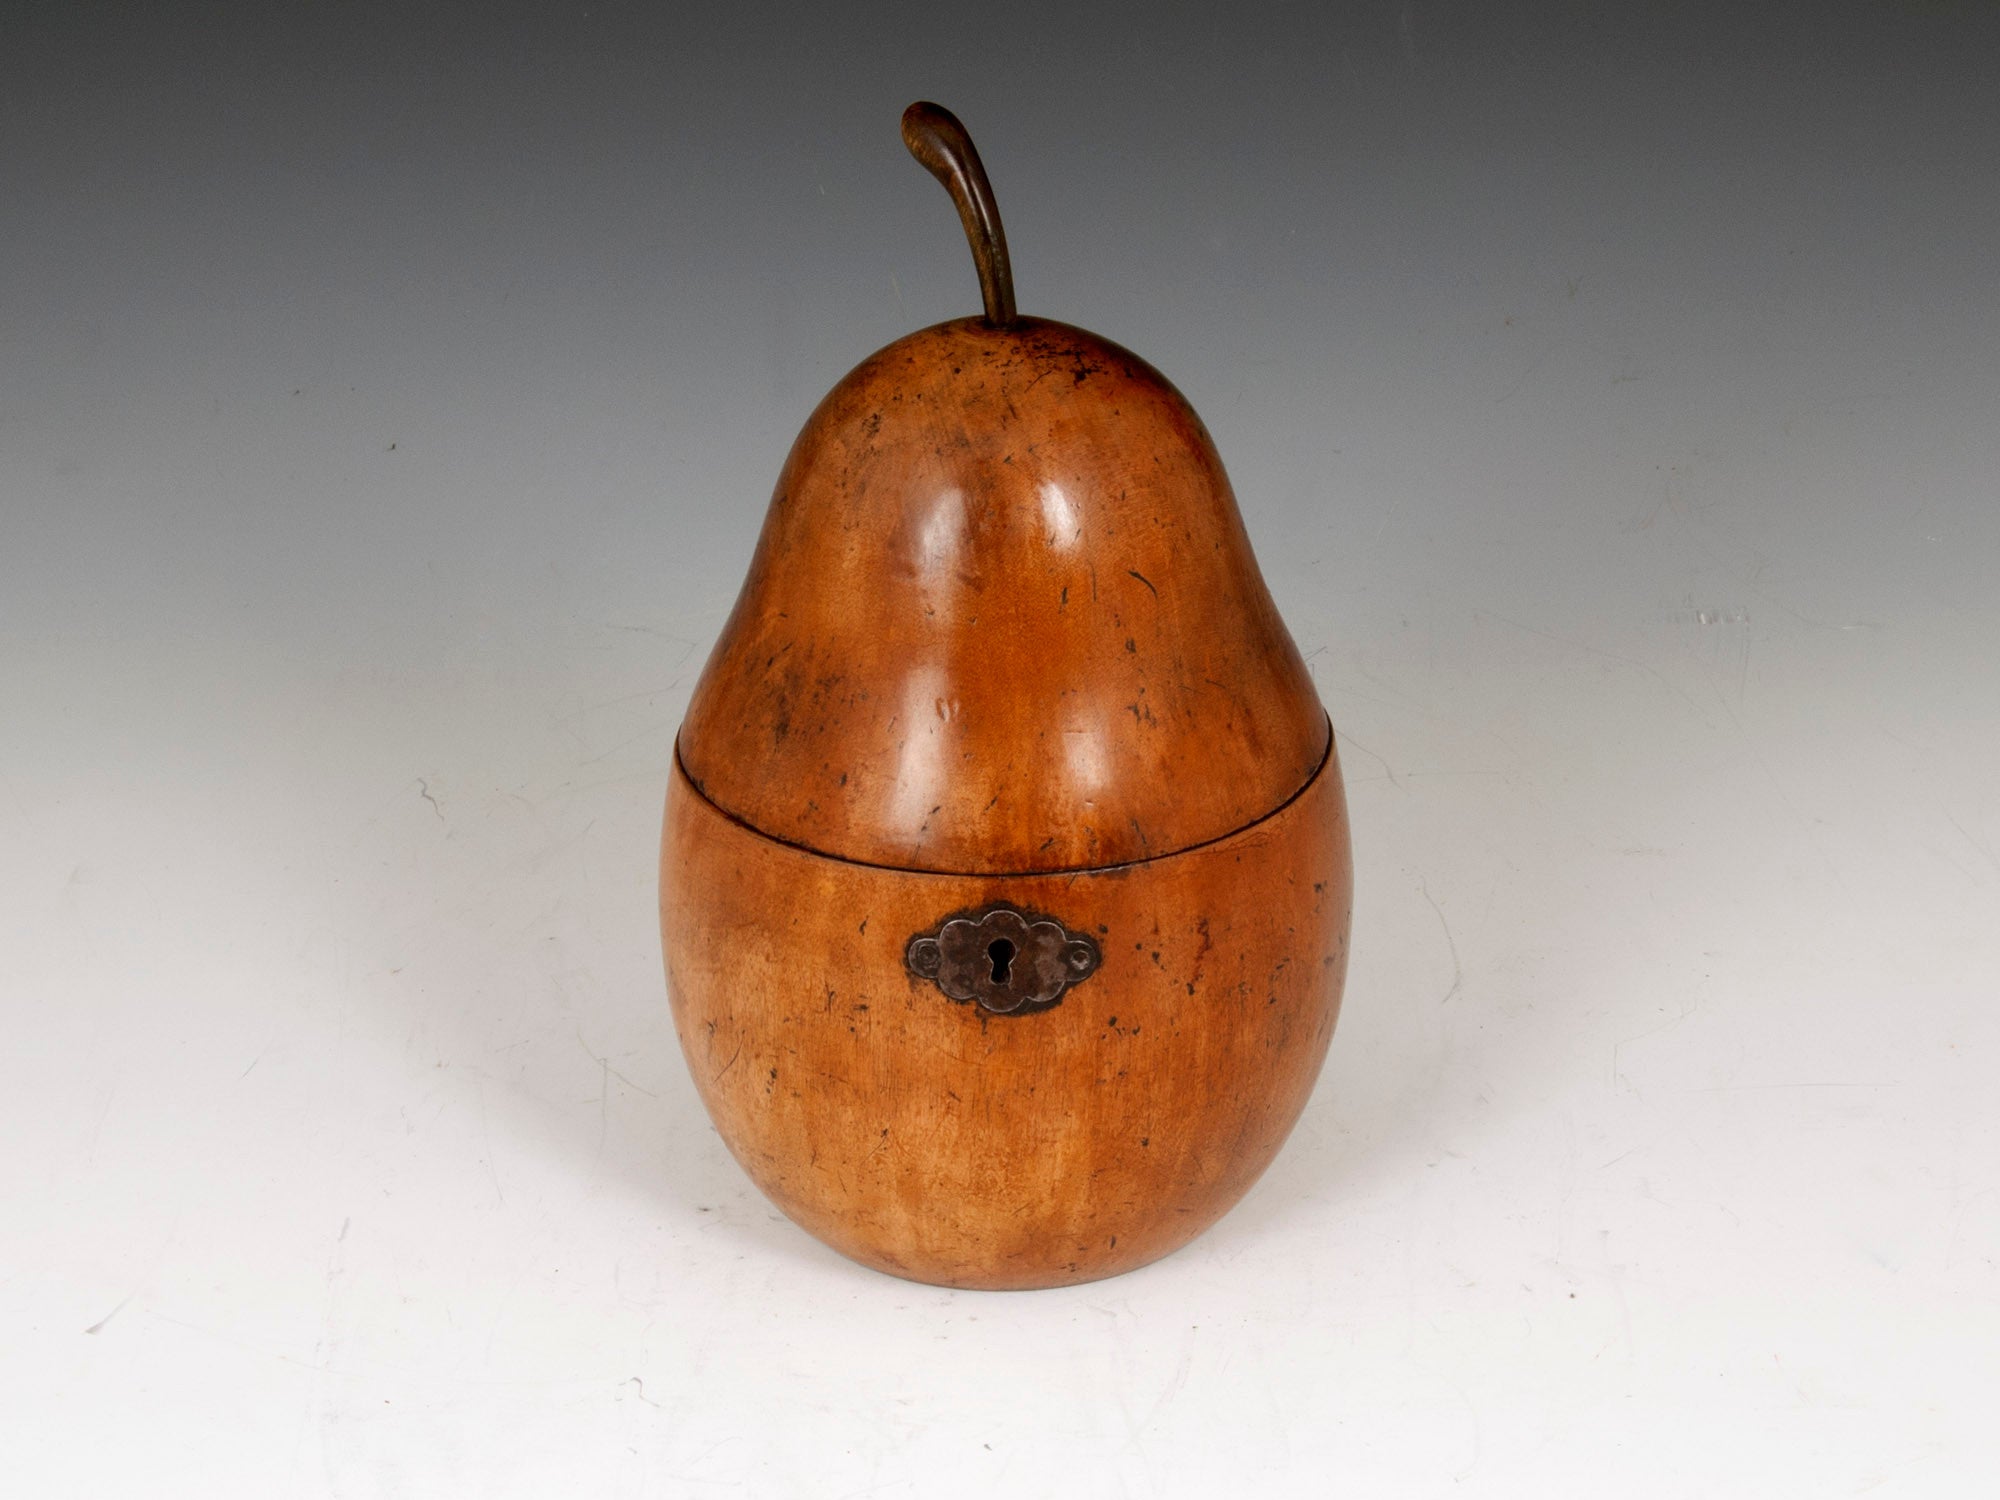 Antique Pear Tea Caddy